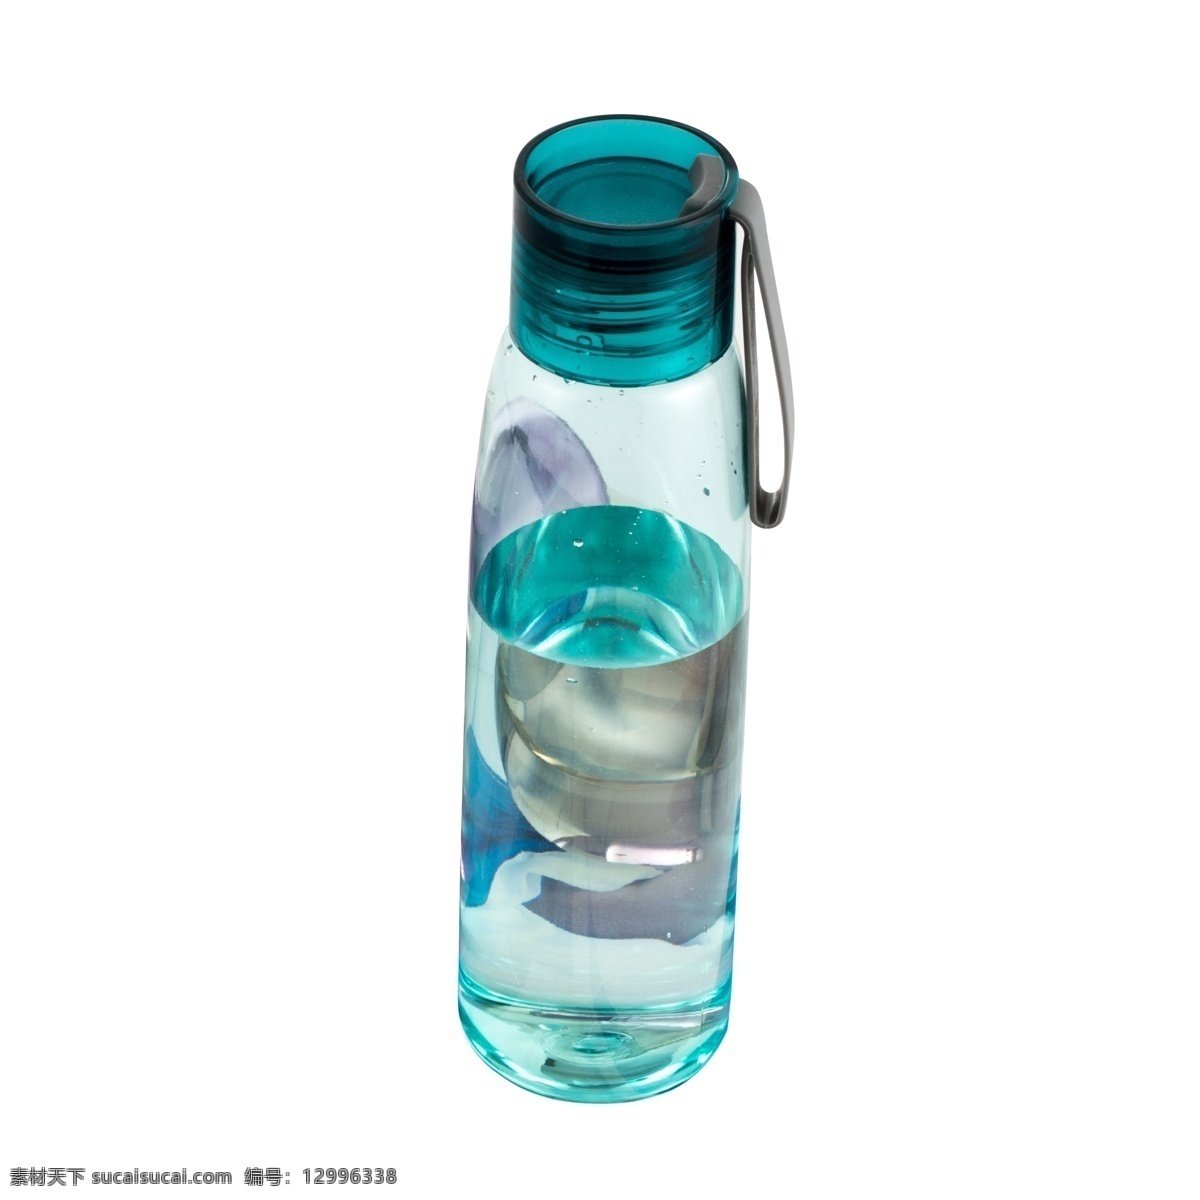 一个 青色 小 水瓶 瓶 水杯 瓶子 杯子 玻璃瓶 塑胶瓶 饮水瓶 日用品 运动水瓶 户外水瓶